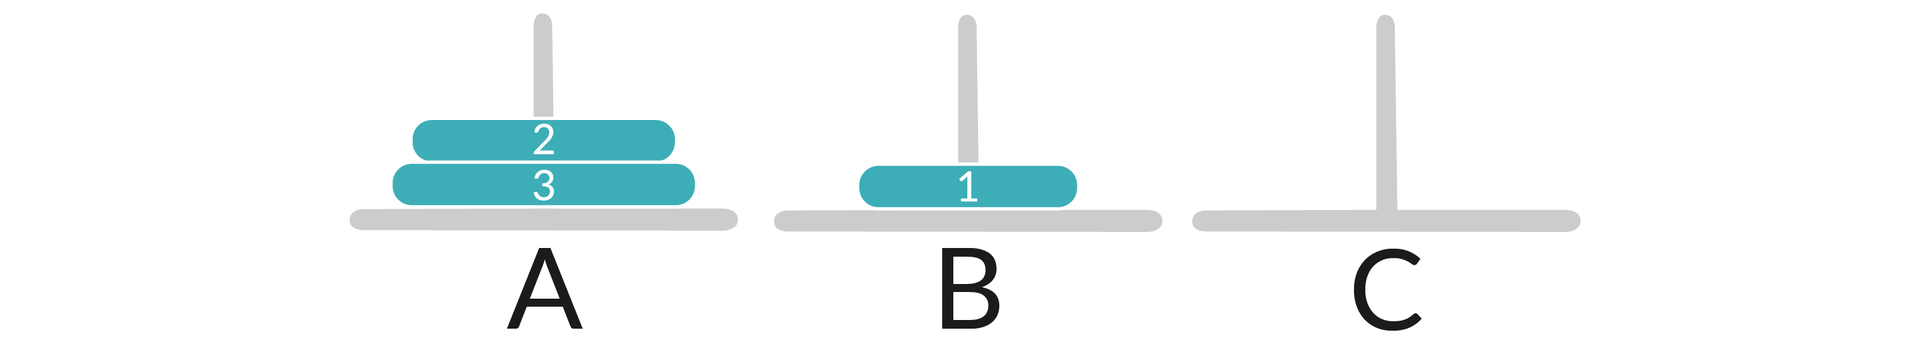 Ilustracja przedstawia trzy pręty oznaczone jako A, B, C. Na pierwszym pręcie są dwa krążki - od dołu do góry od większego do mniejszego, są ponumerowane 3, 2. Na pręcie oznaczonym literą B jest jeden krążek z numerem 1.   